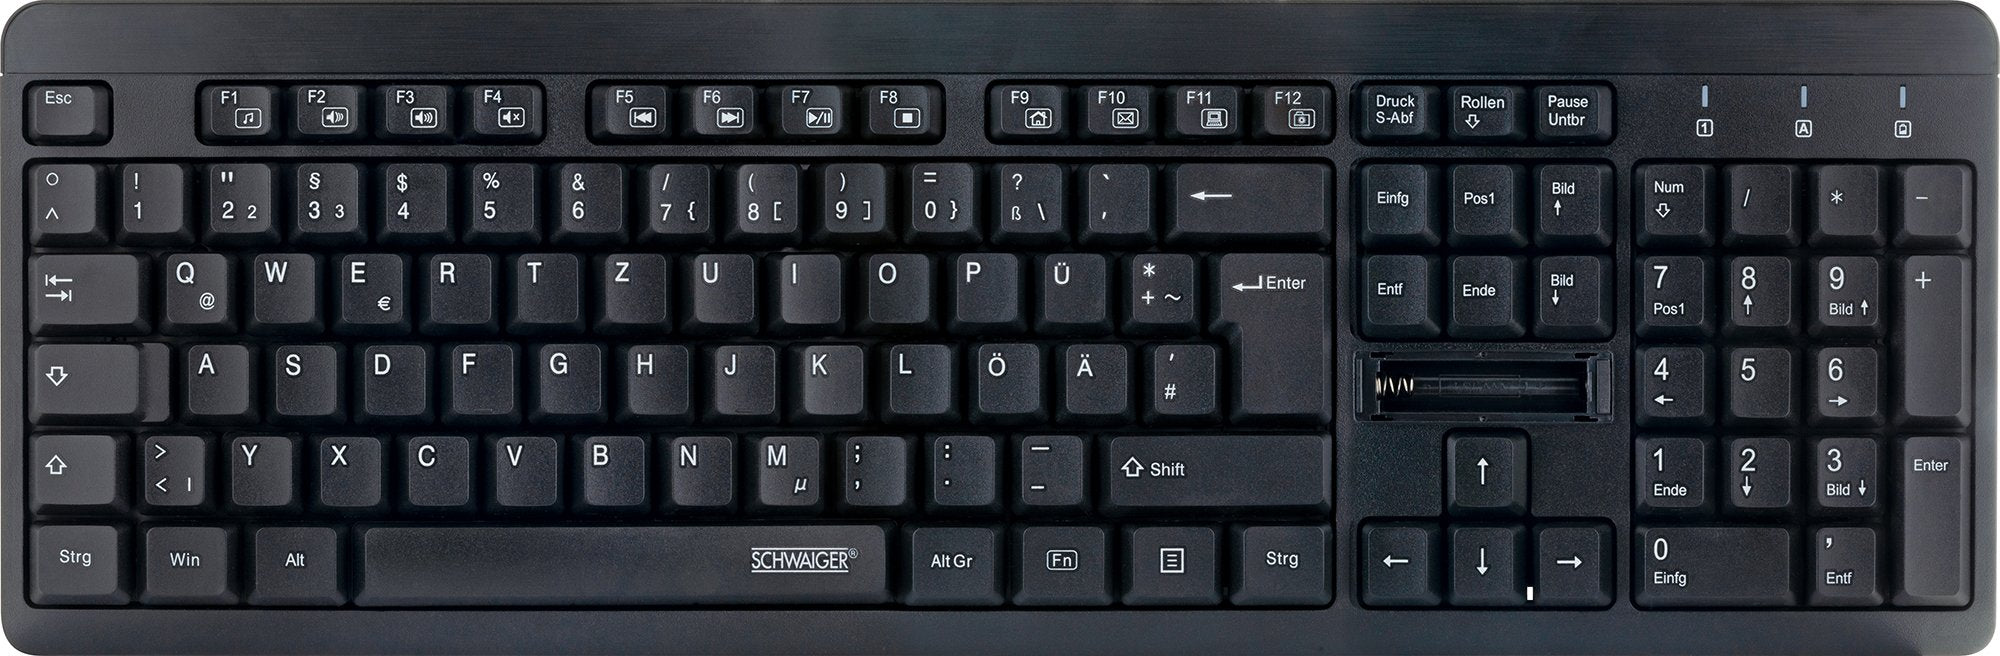 PC keyboard (wireless)